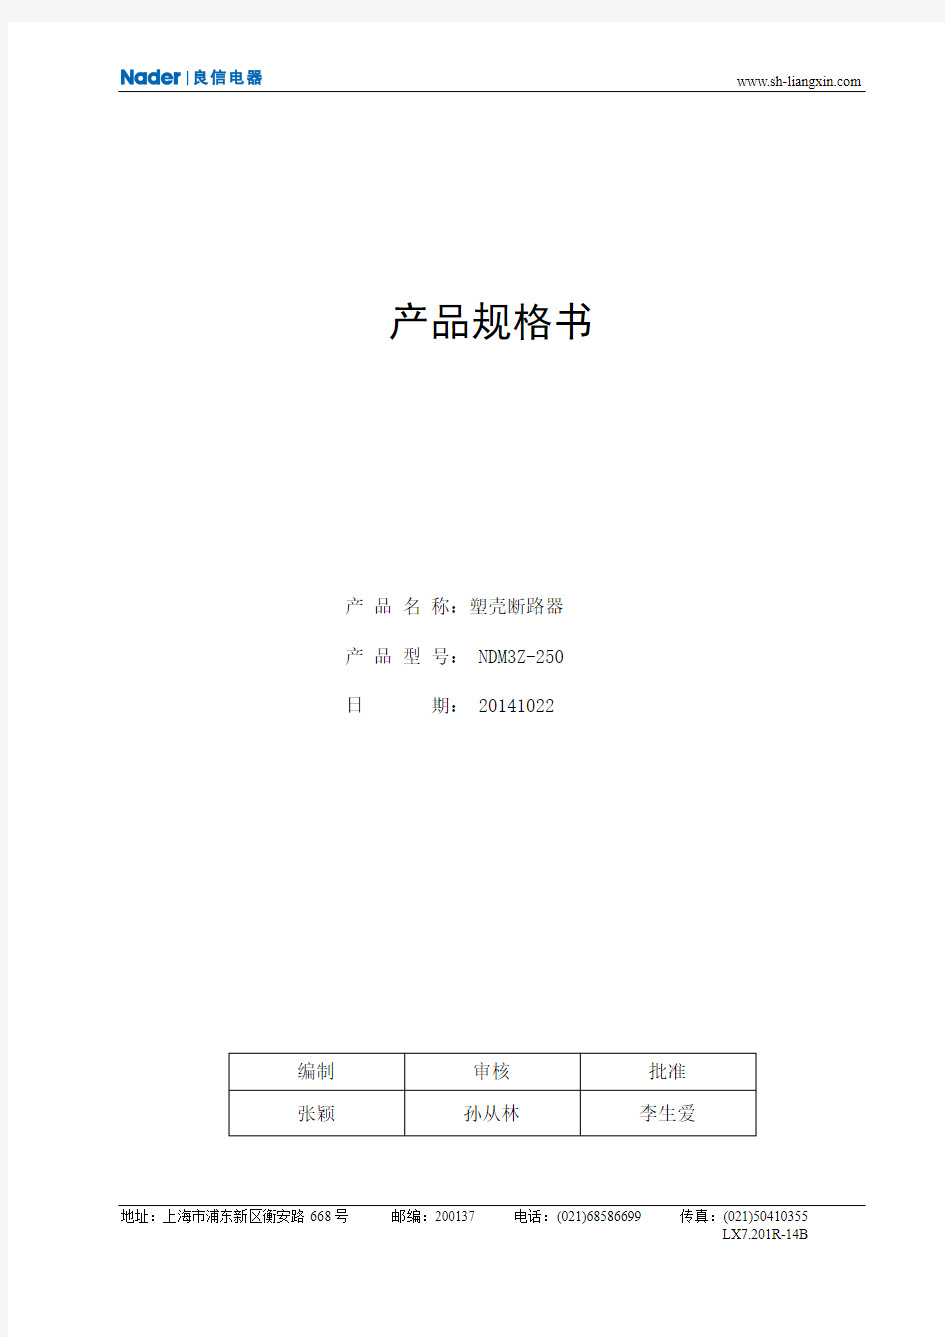 上海良信NDM3Z-250产品规格书